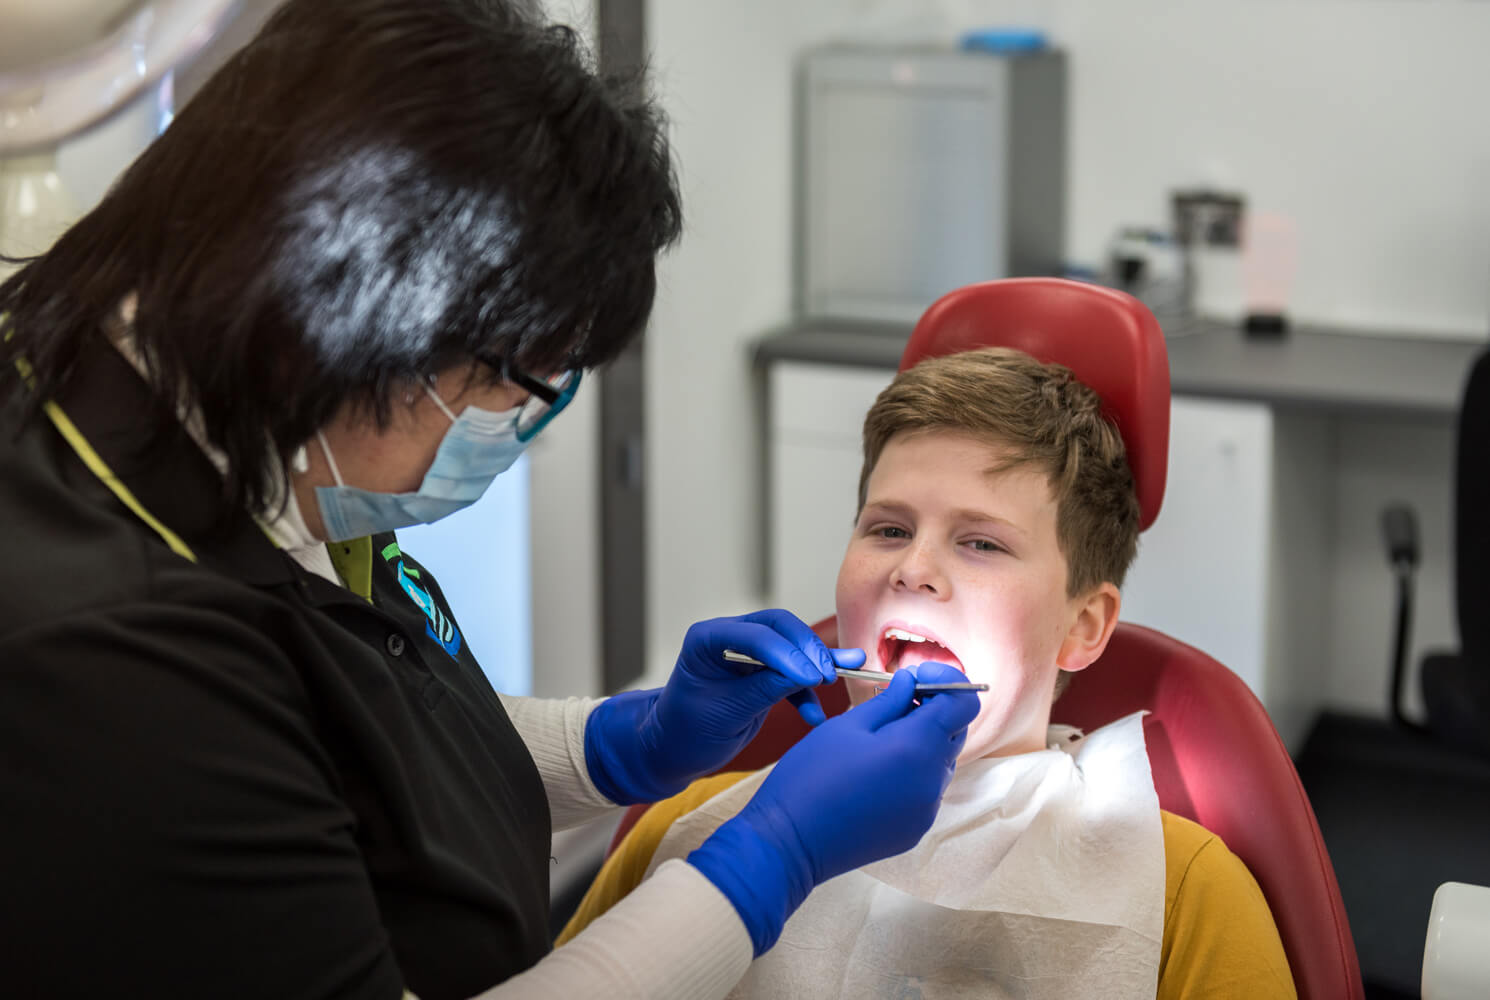 Antonia dentist and Bence dental check up